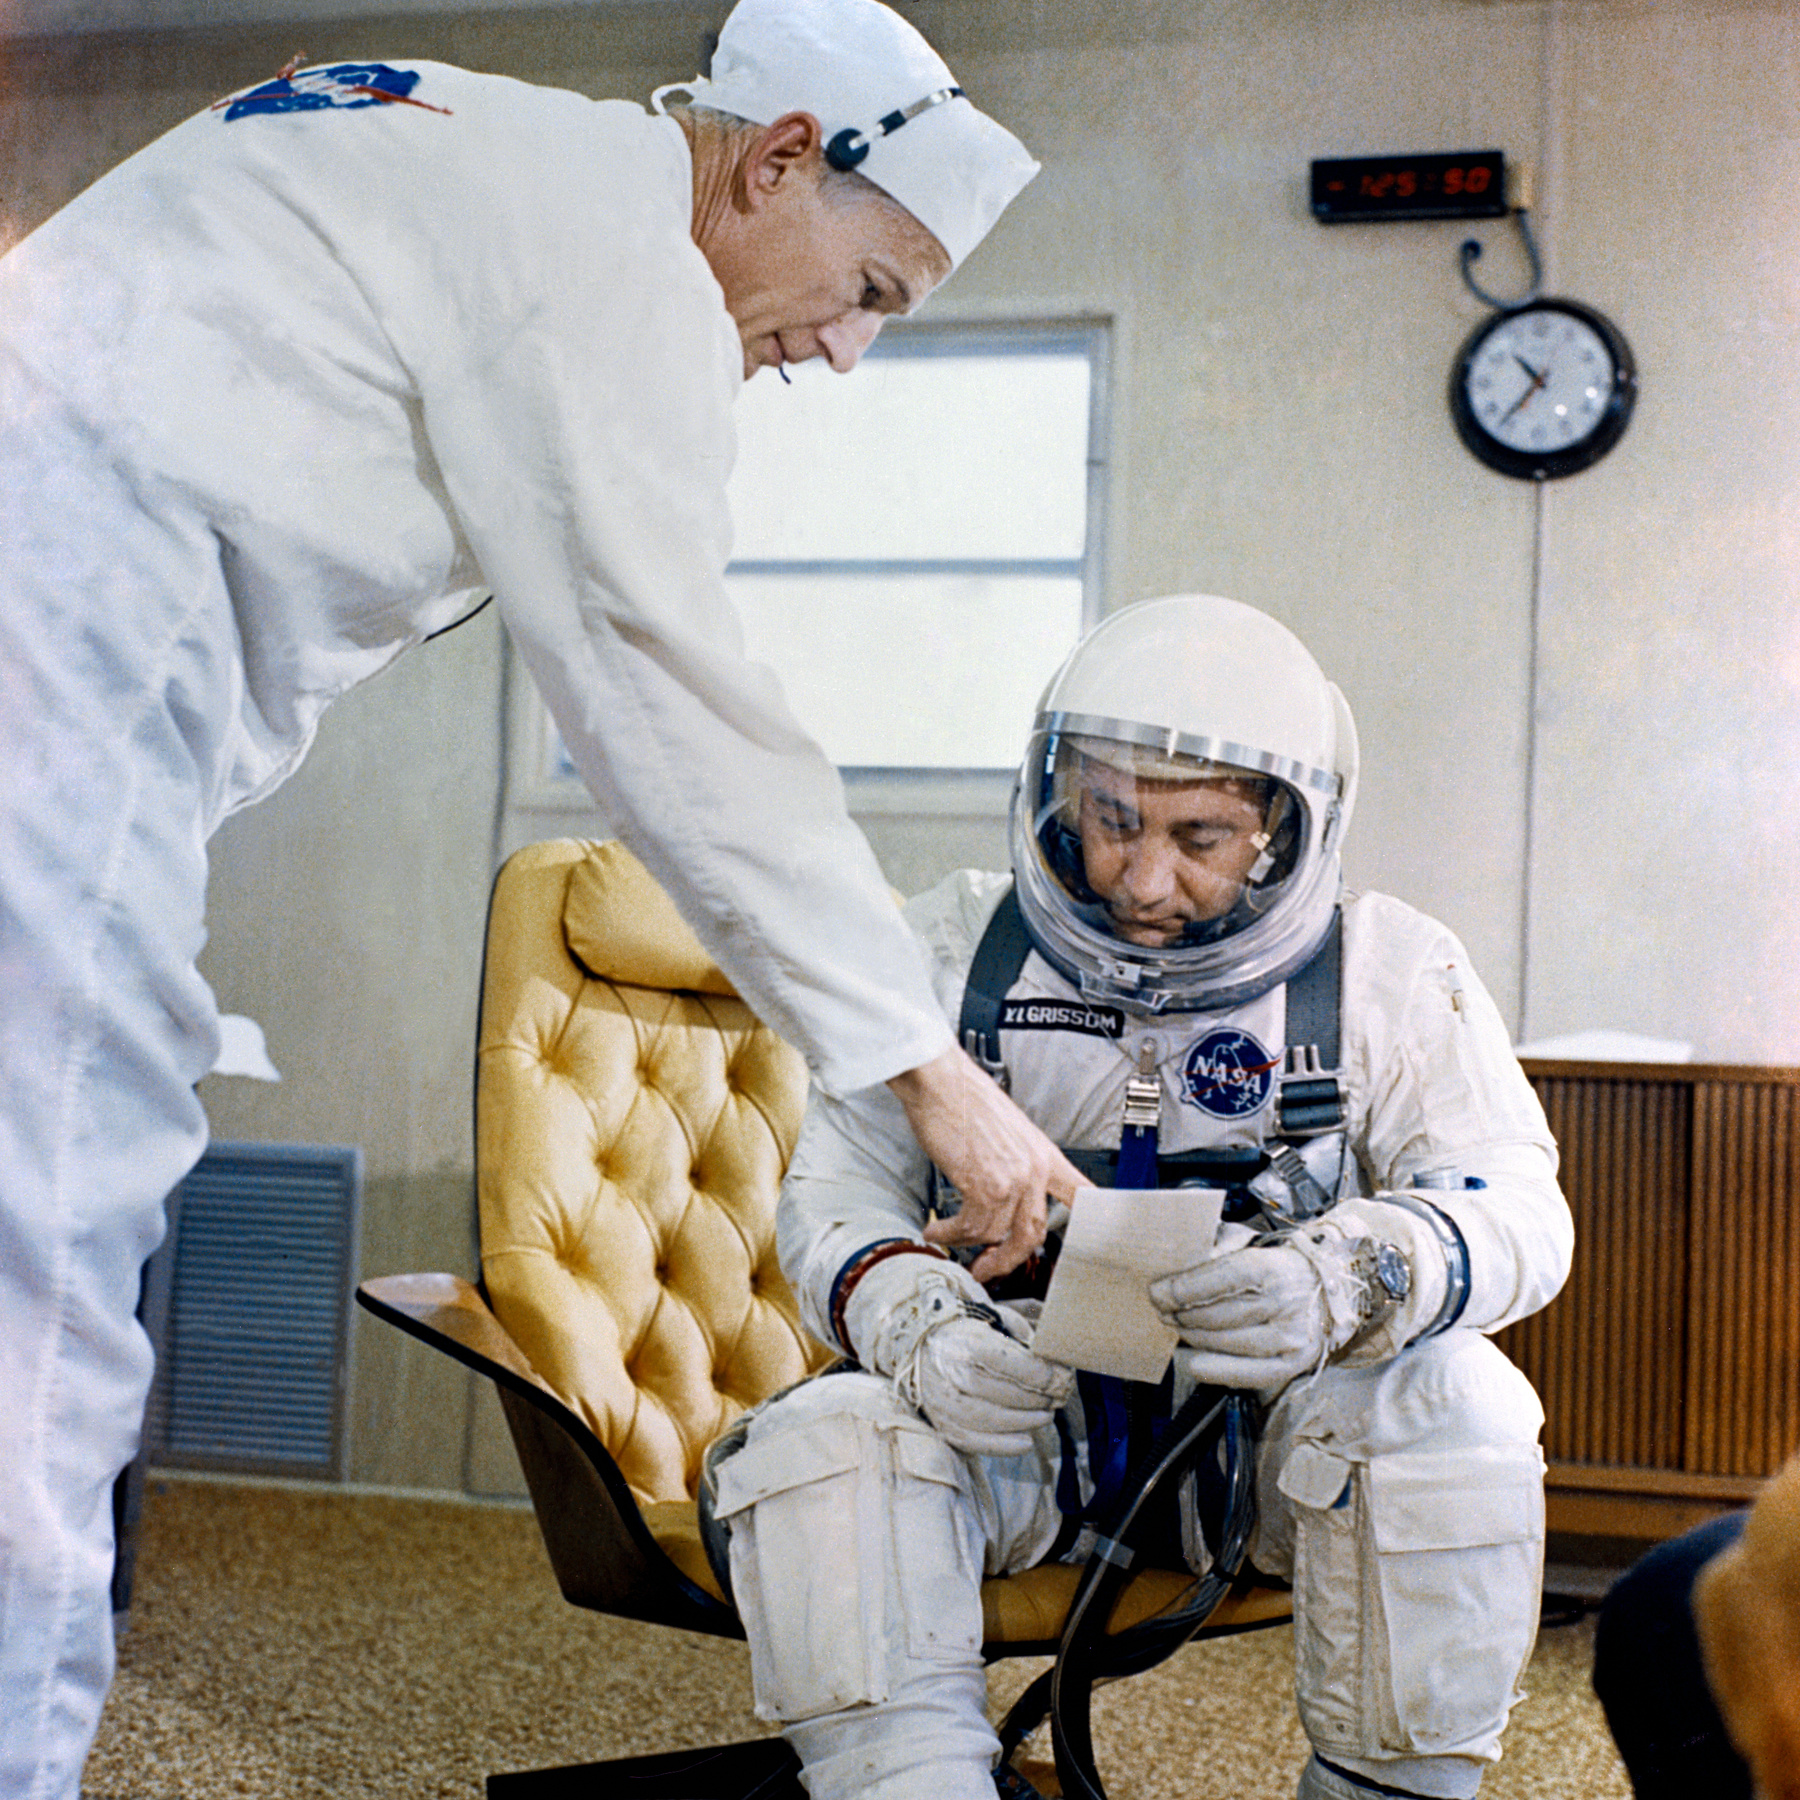 Lovell és Aldrin a Gemini-program sikeres végét ünneplik.